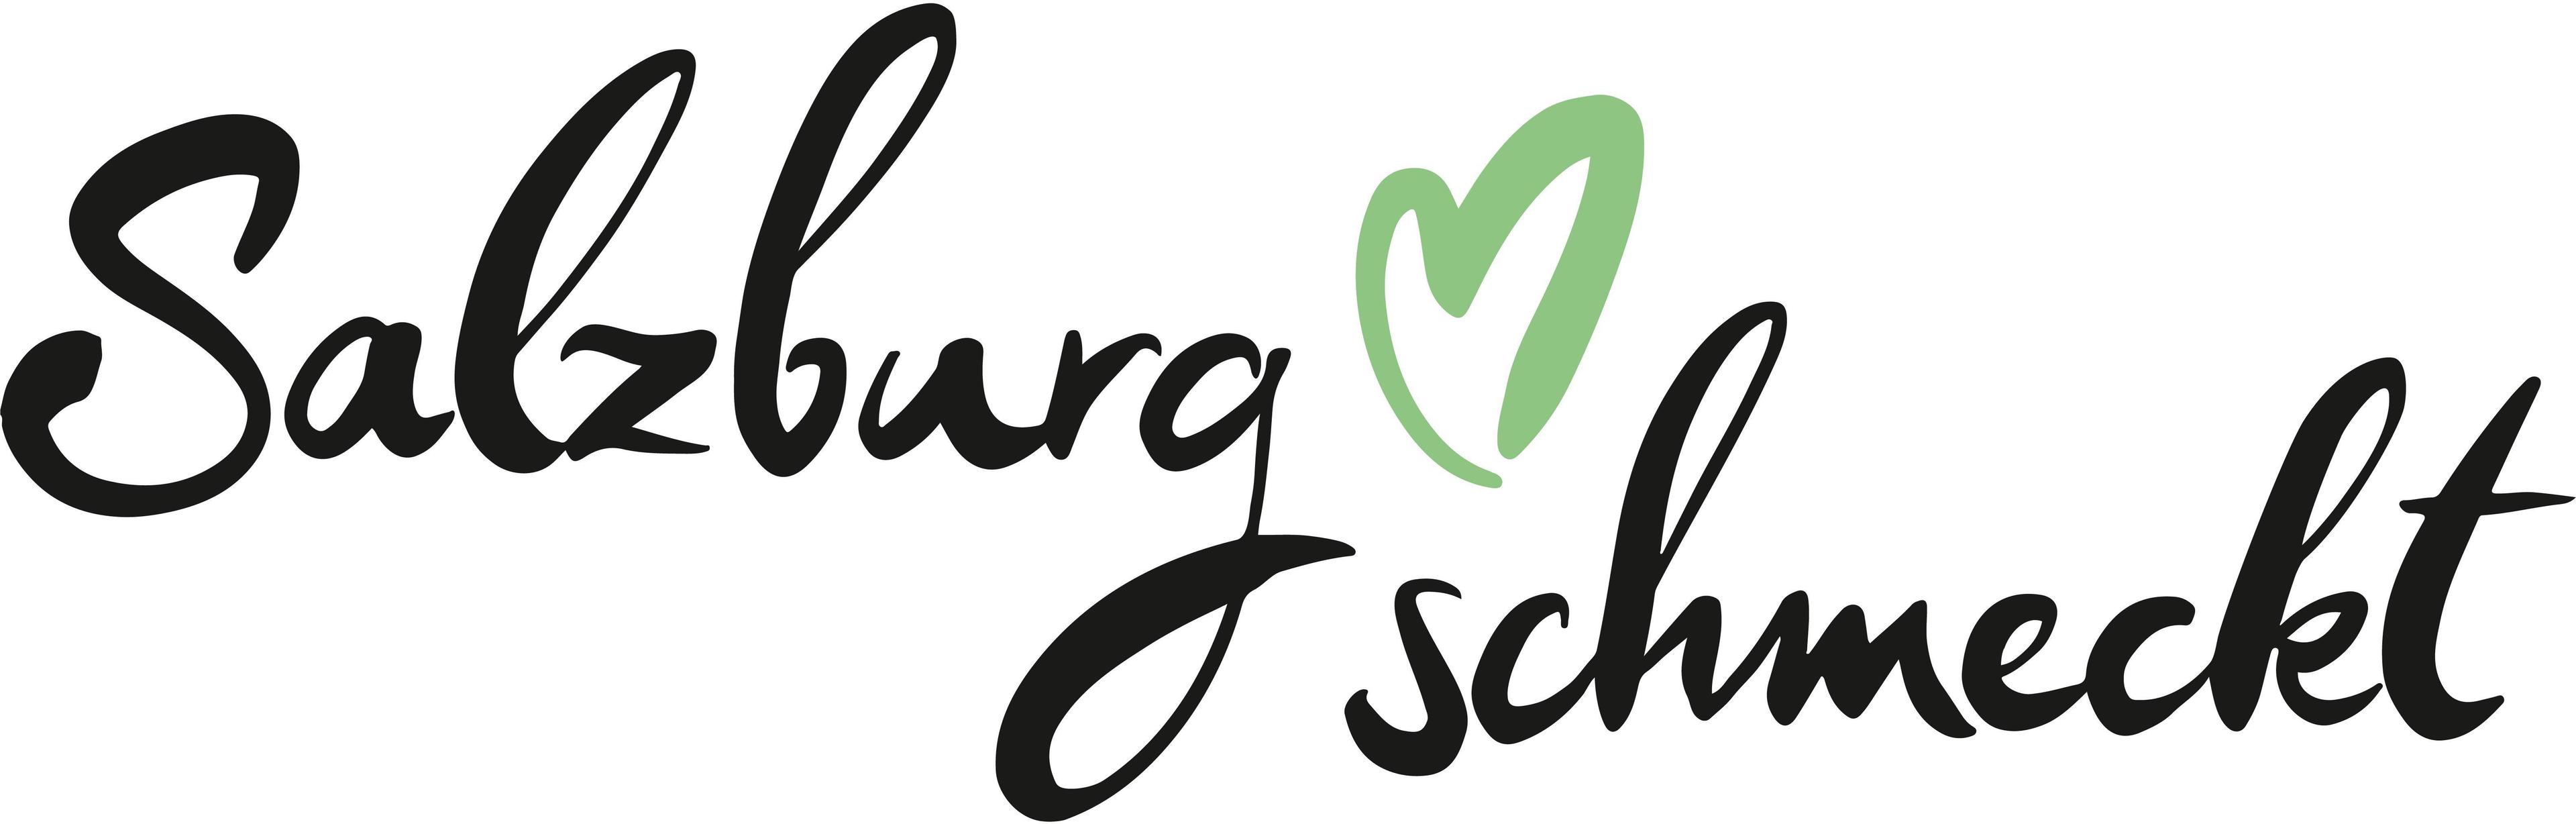 Logo Salzburg schmeckt